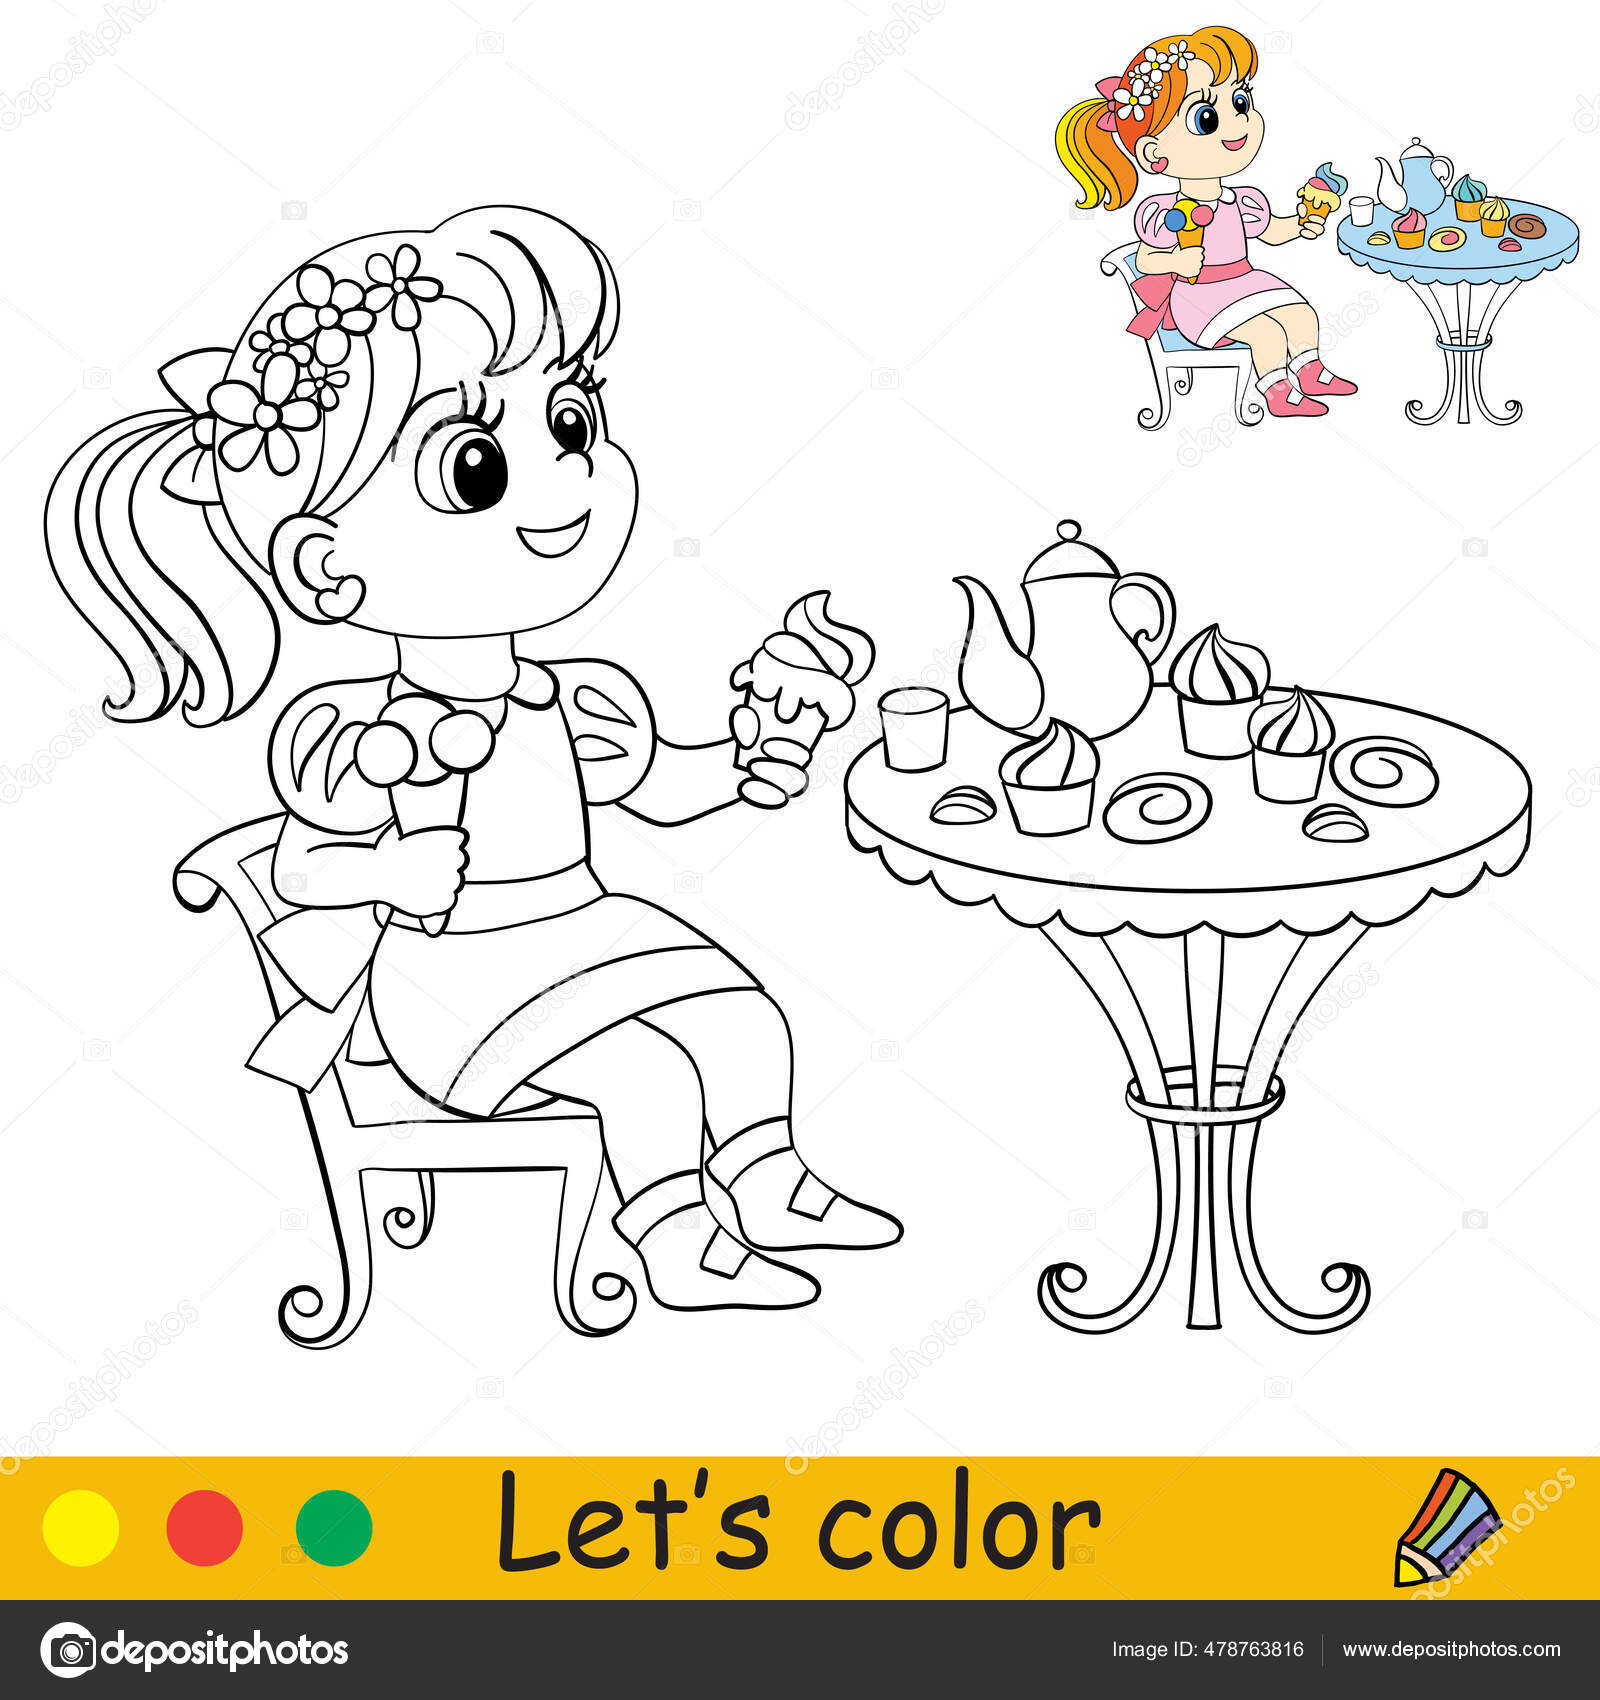 Dibujo de mesa para colorear e imprimir - Dibujos y colores